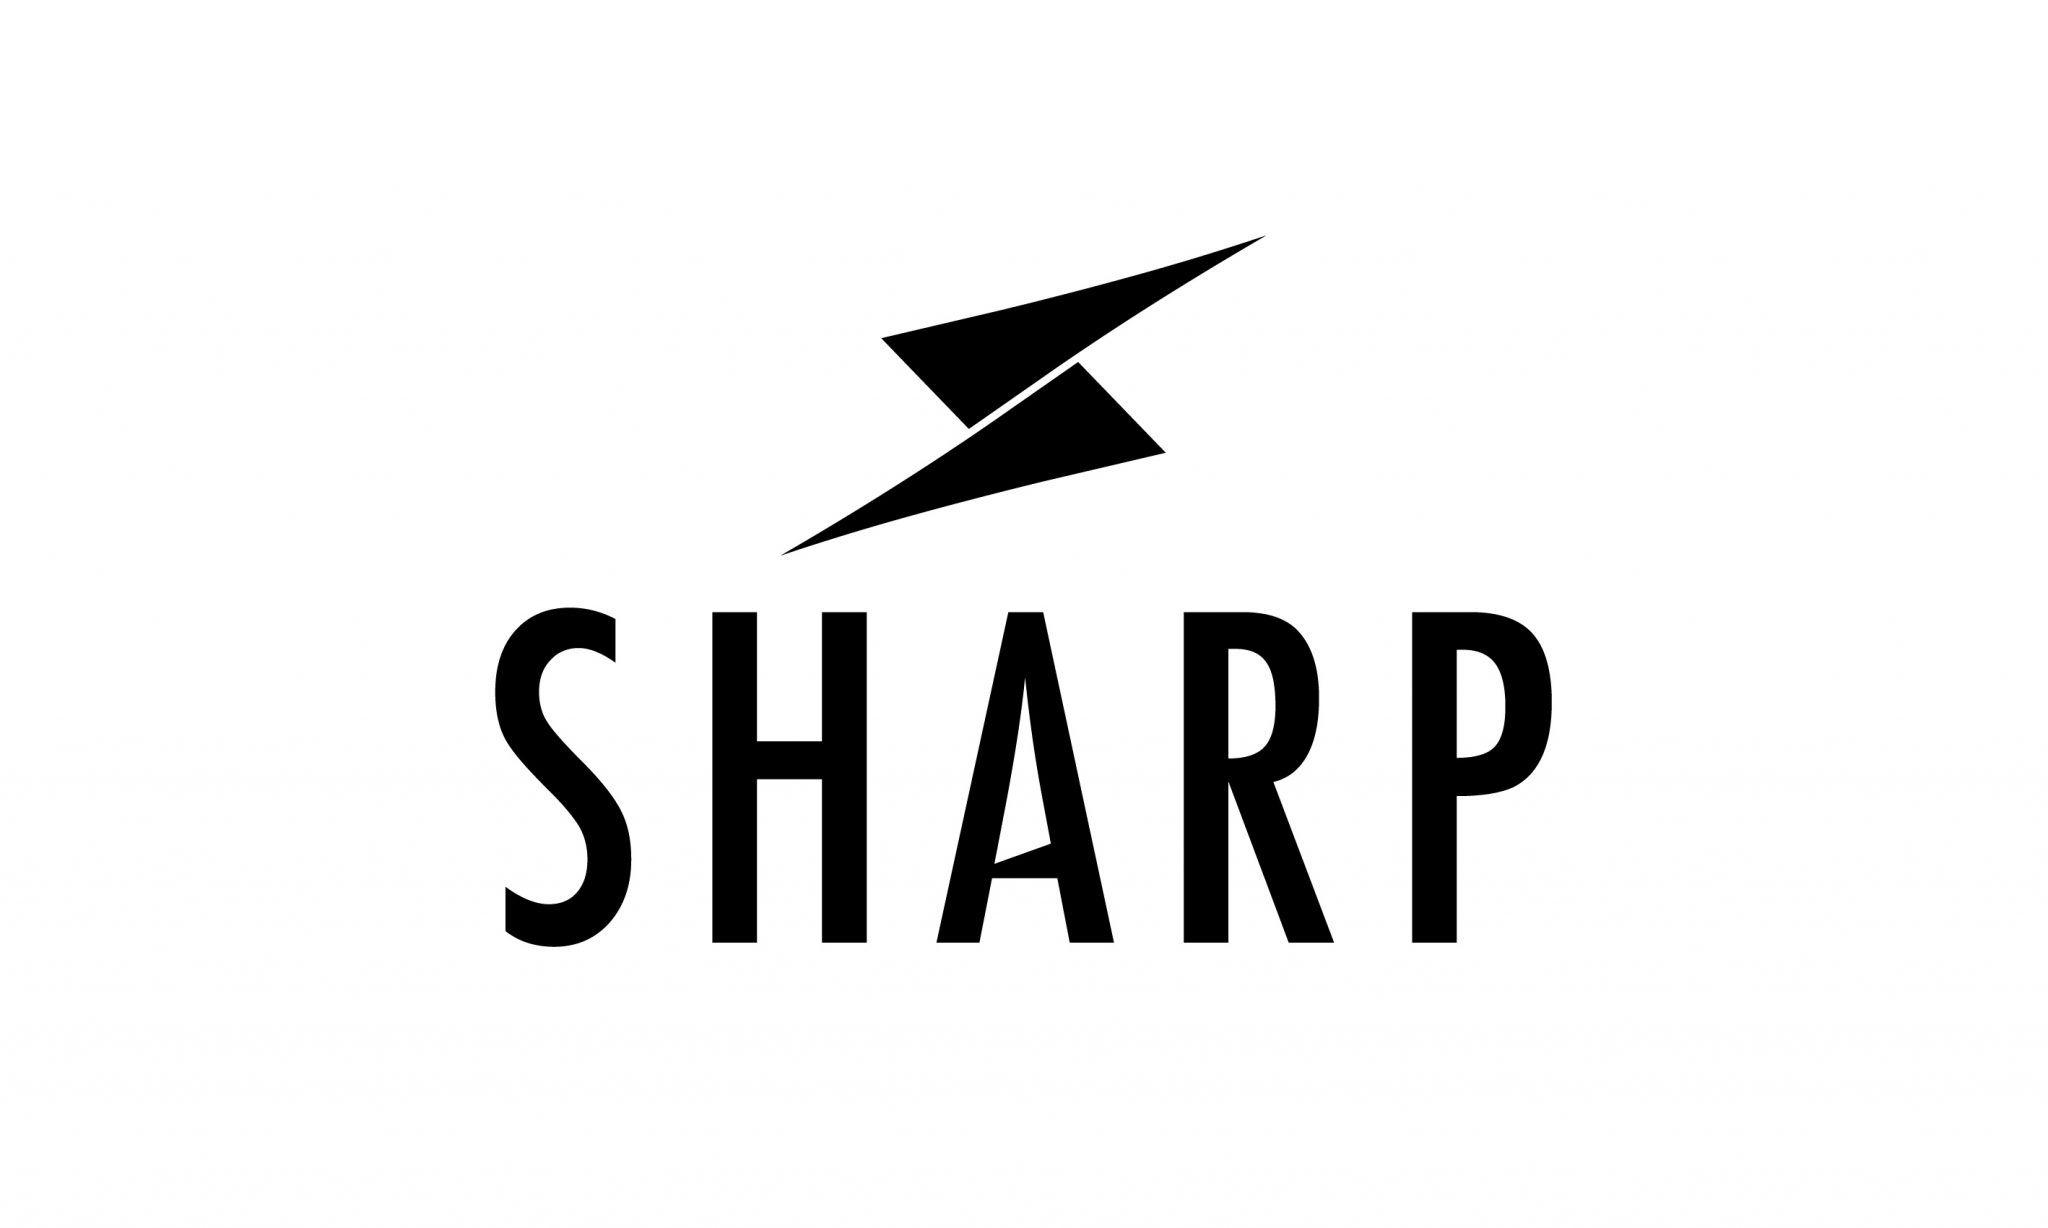 Sharp Logo - Sharp - Dunlop design